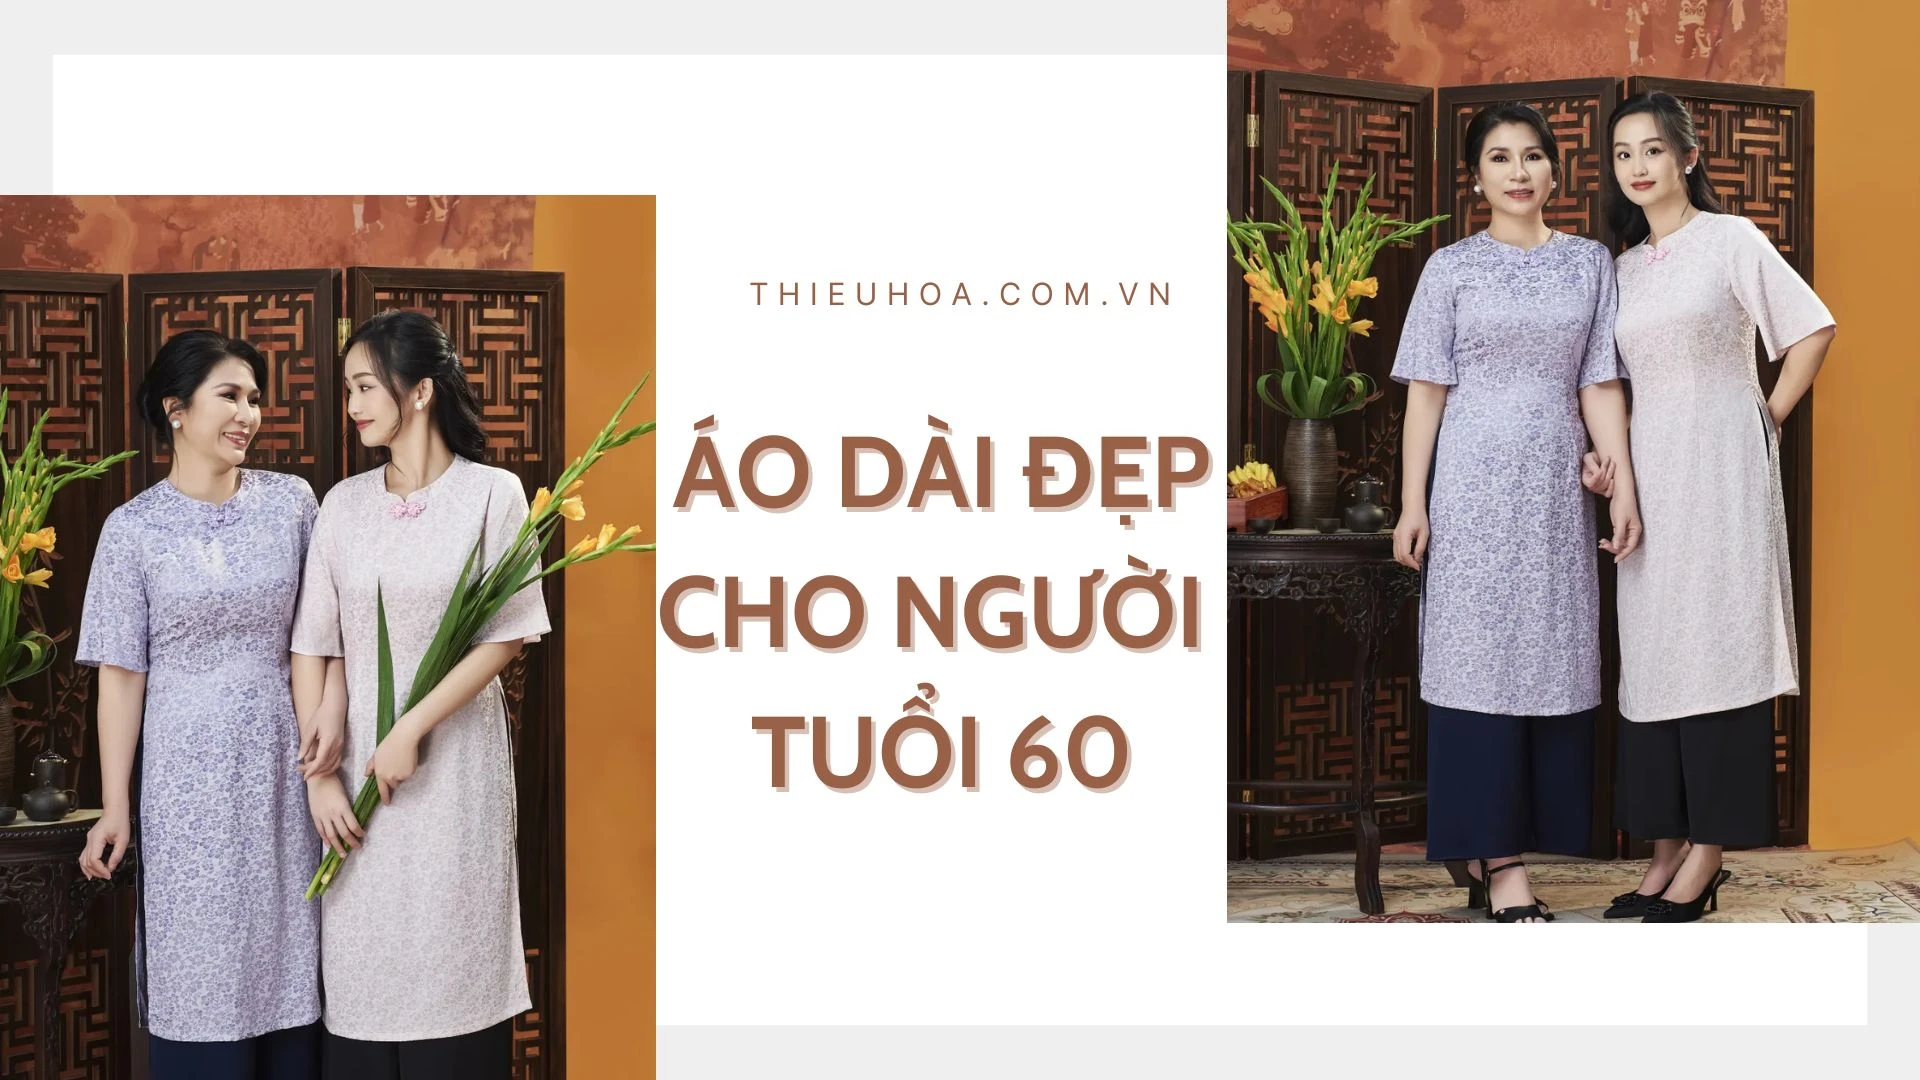 [BST] Những mẫu áo dài đẹp cho người 60 tuổi THANH LỊCH